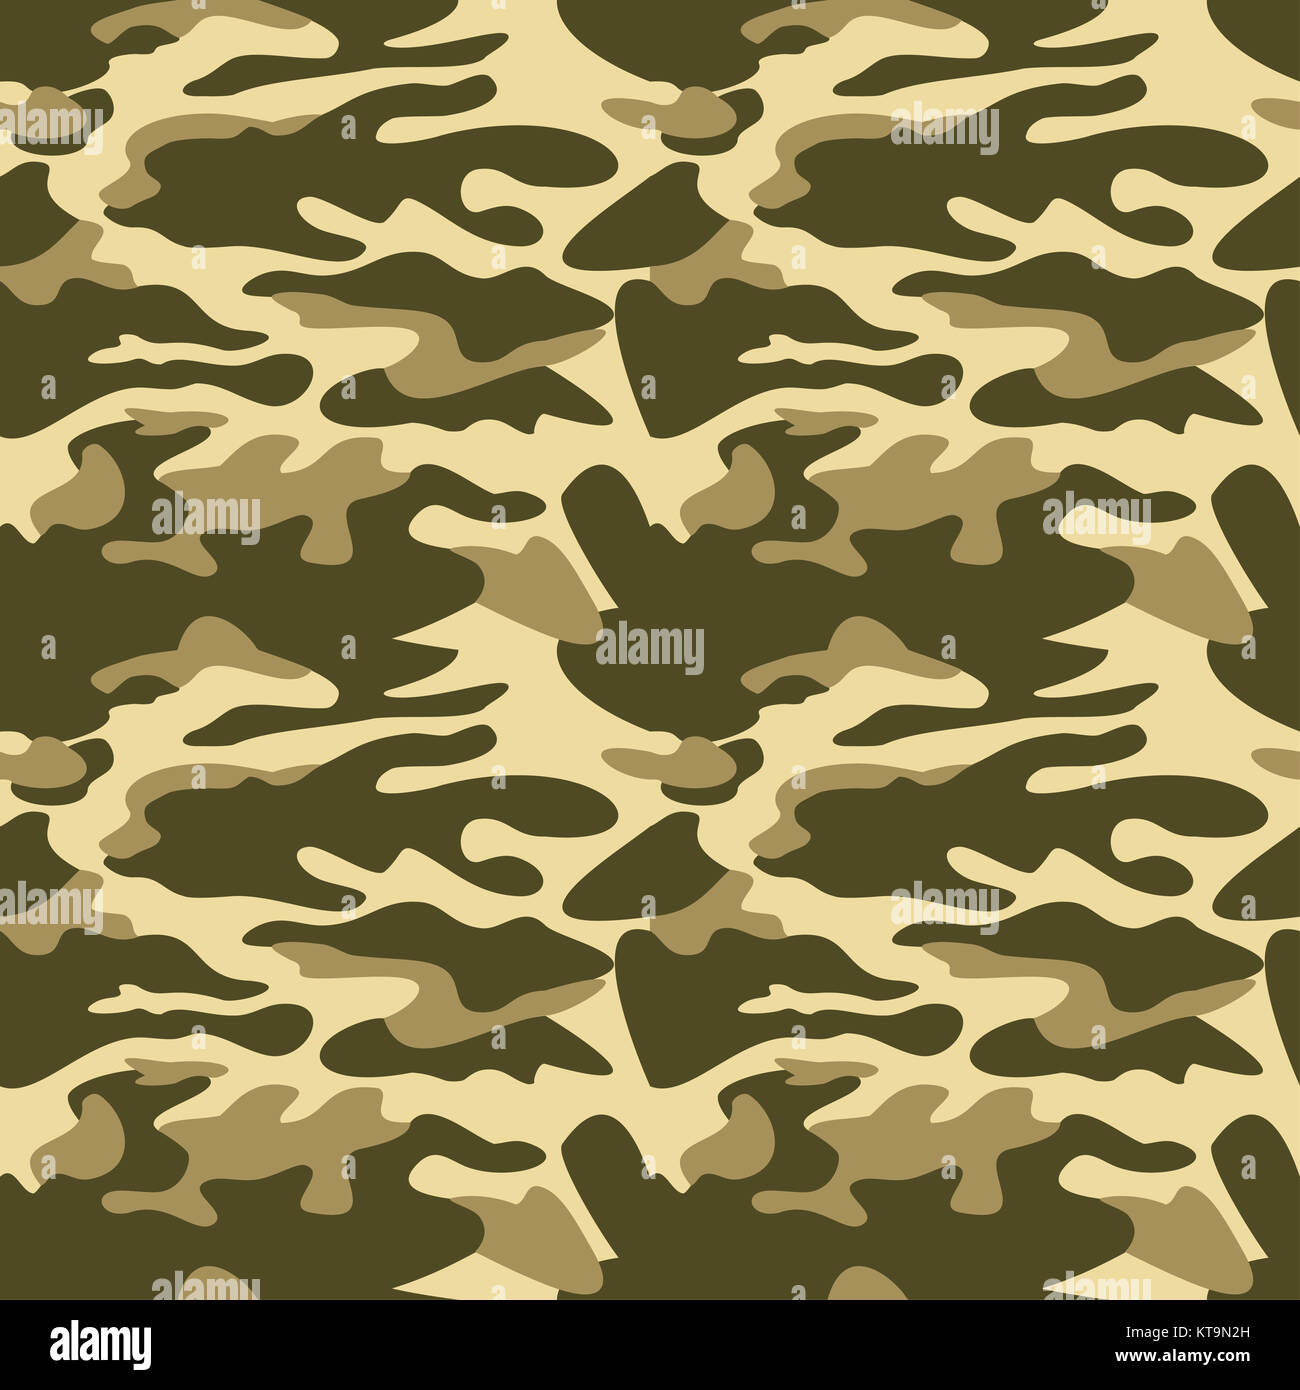 Camouflage background seamless vector illustration. Classic style vêtements camo masquage répéter l'impression. Couleurs vert olive kaki texture forestière Banque D'Images